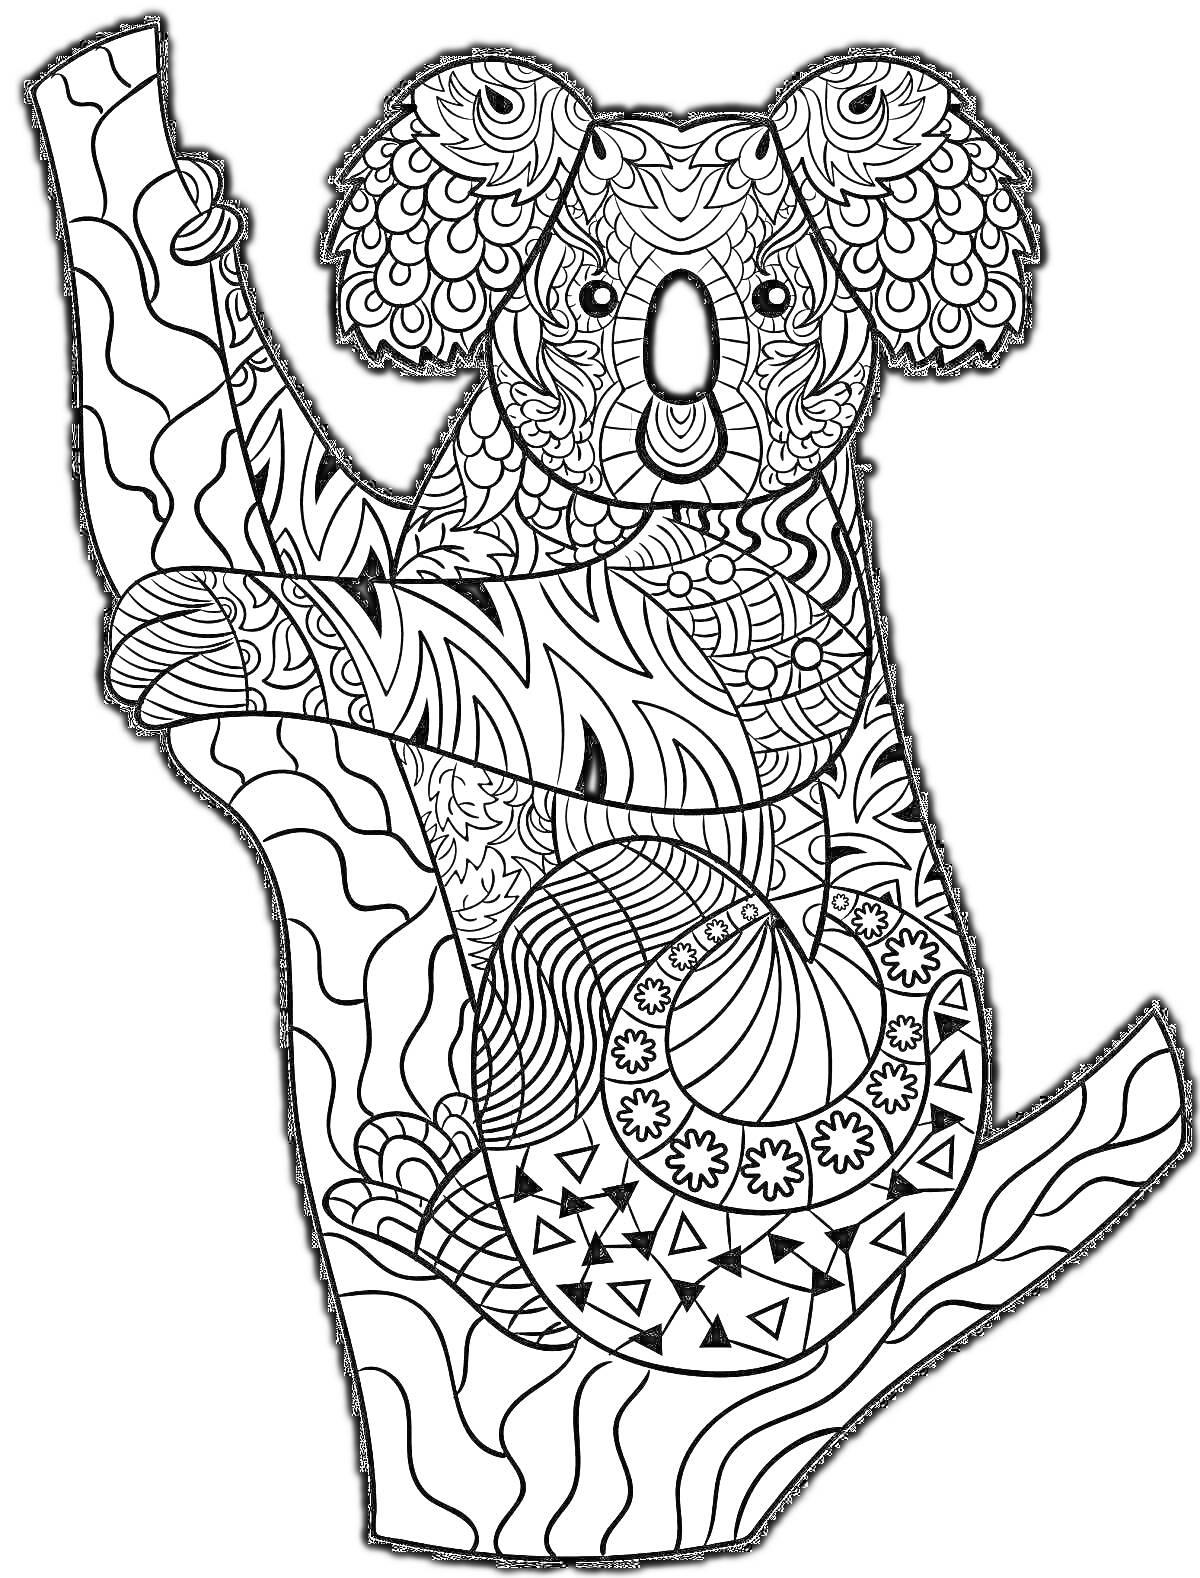 Раскраска Раскраска с коалой на дереве, состоящая из сложных узоров и орнаментов.